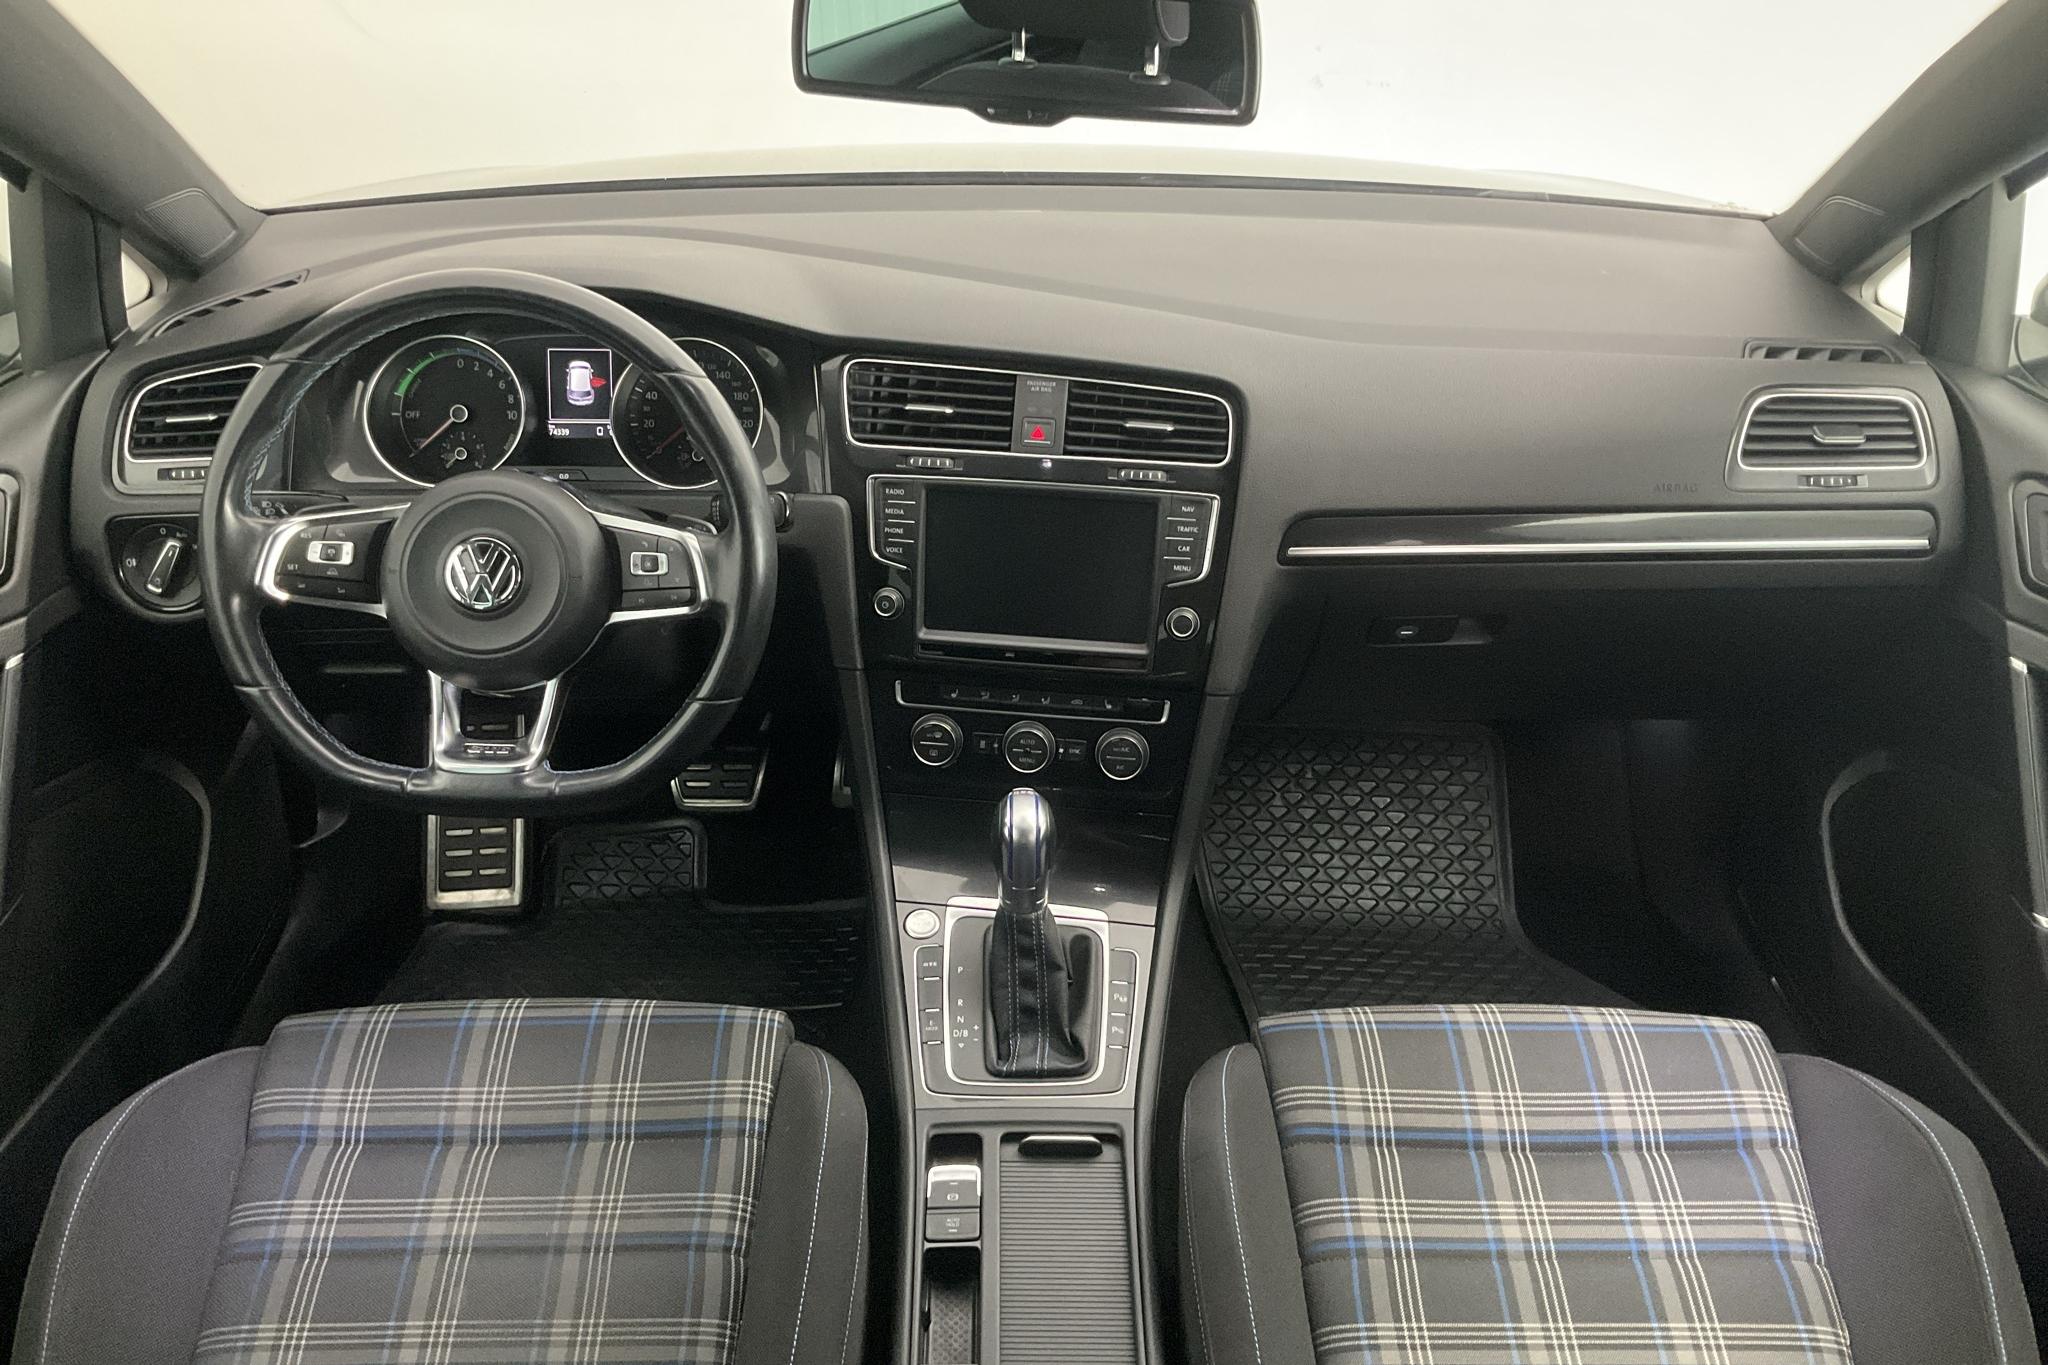 VW Golf VII 1.4 Plug-in-Hybrid 5dr (204hk) - 74 340 km - Automatic - silver - 2015